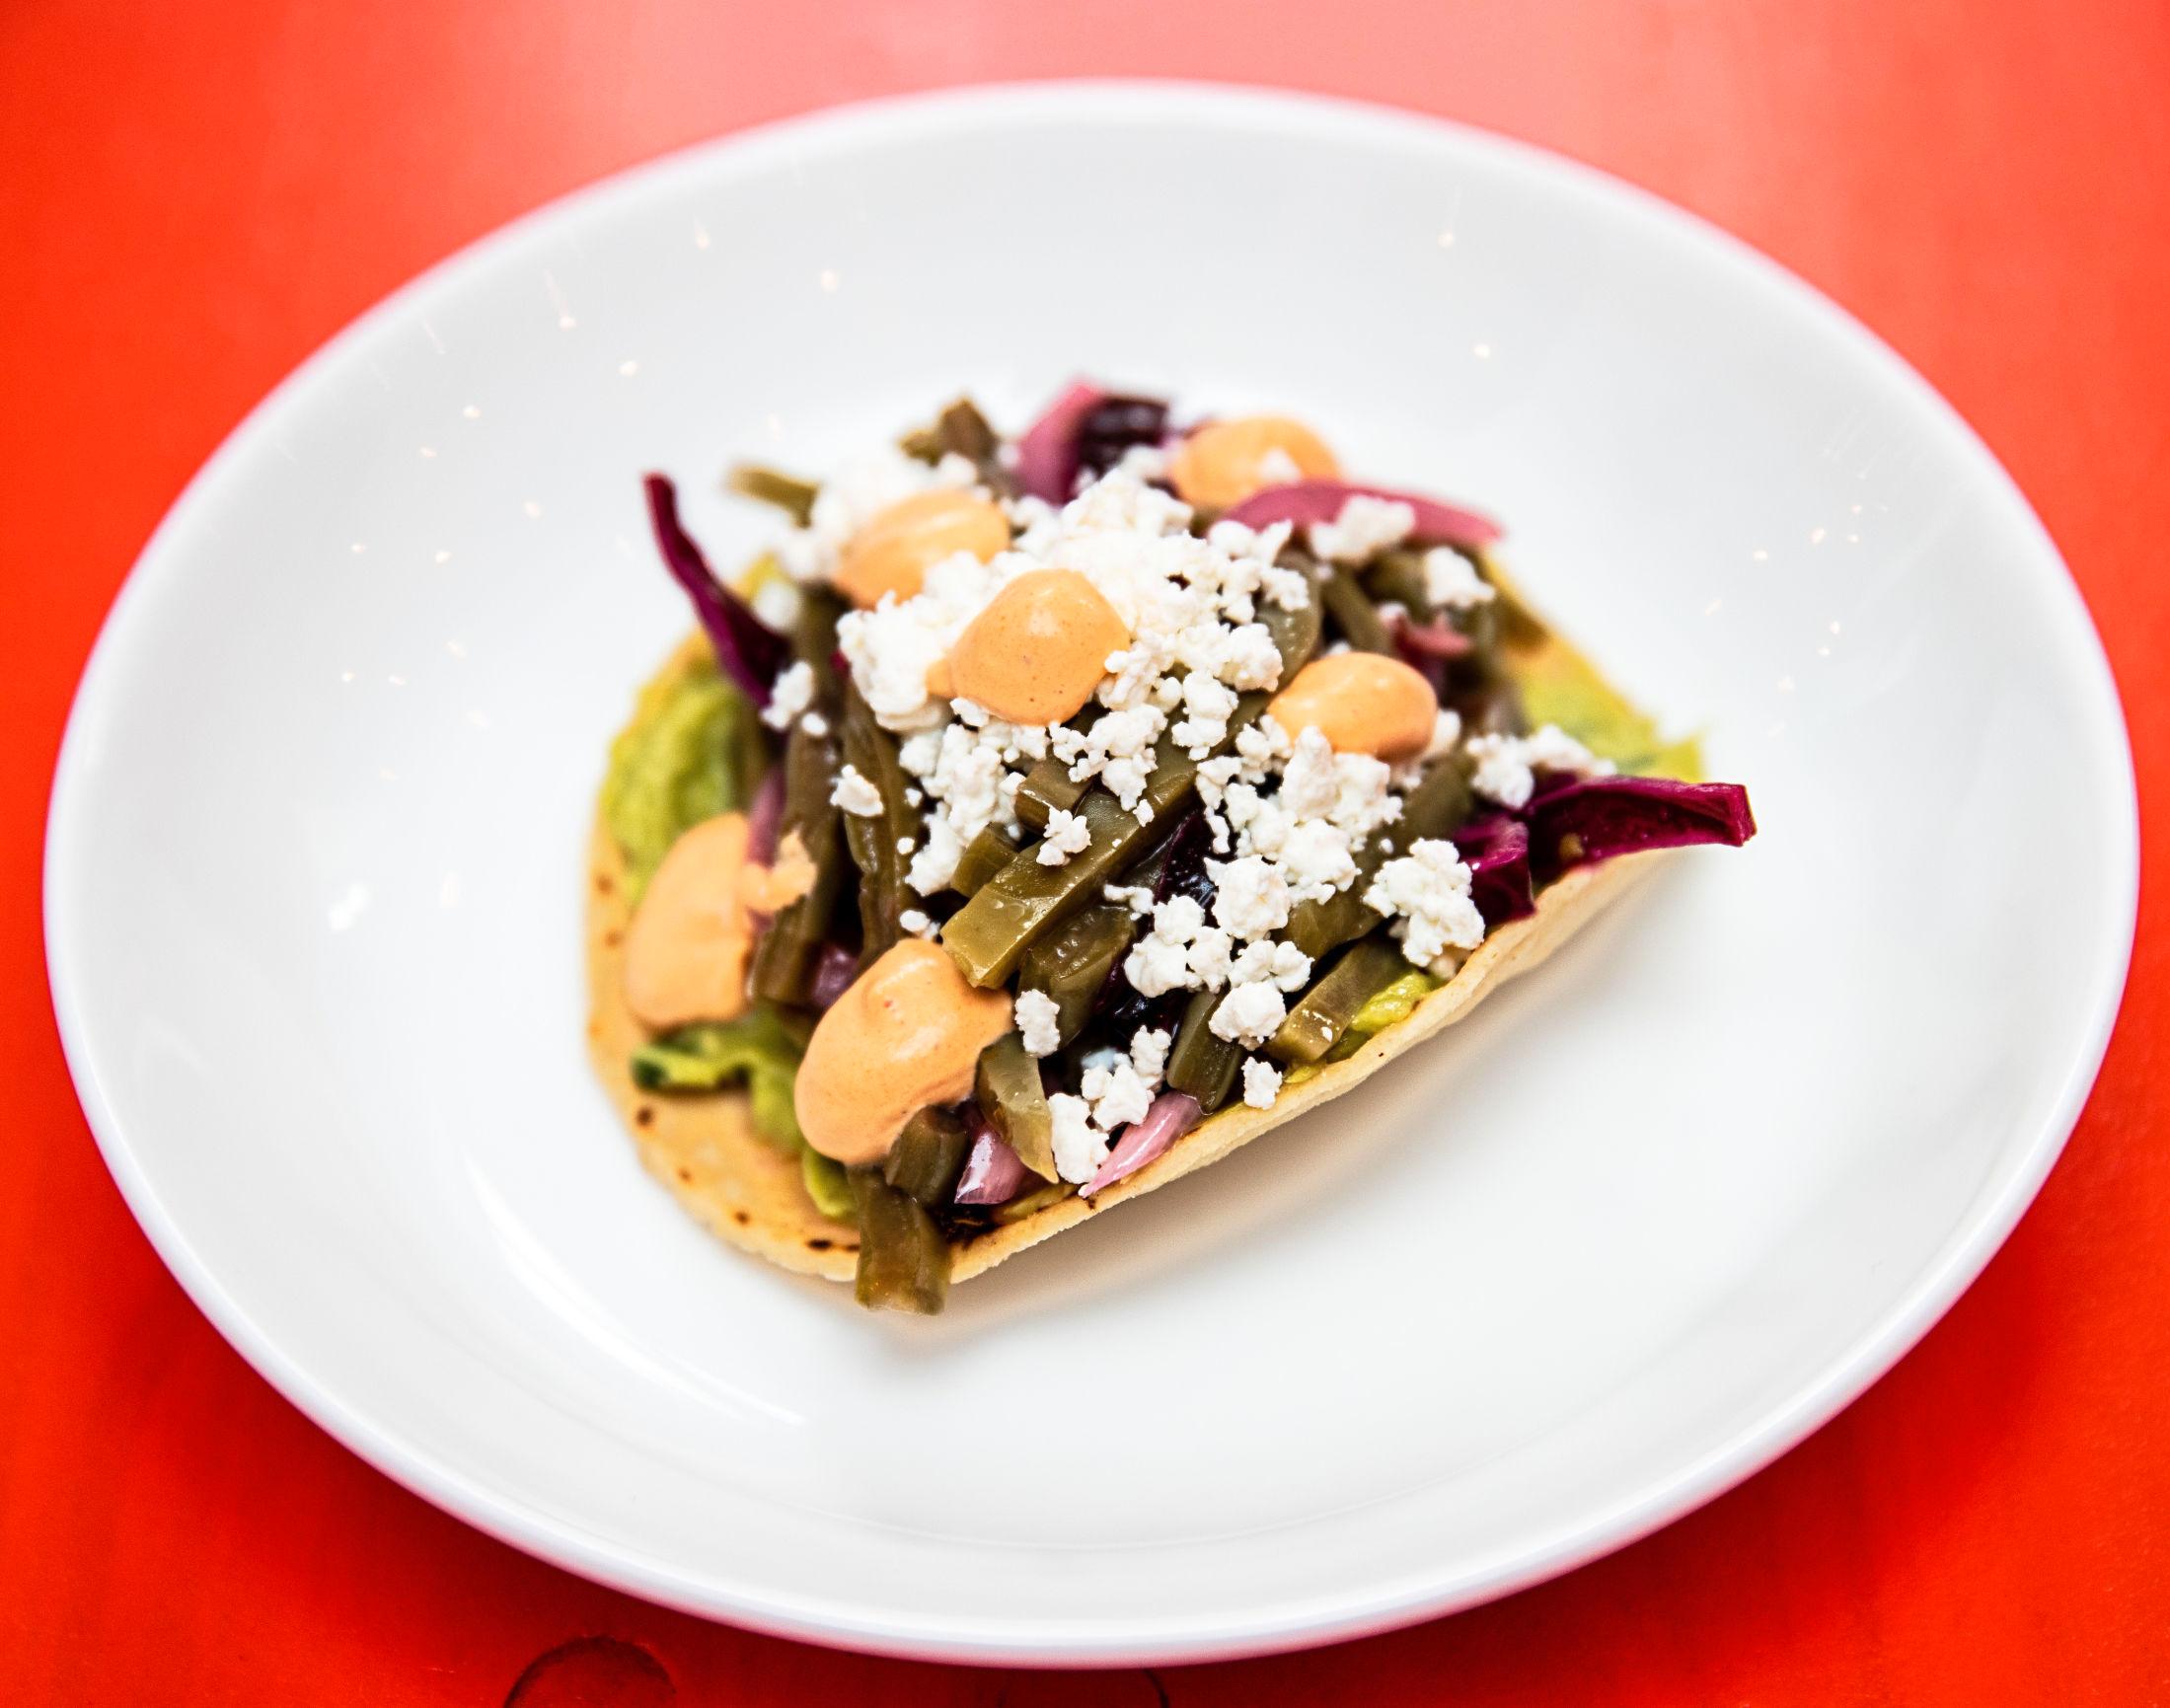 FALT I SMAK: Tostada med kaktus, rødkål, ost og guacamole. Foto: Hallgeir Vågenes/VG